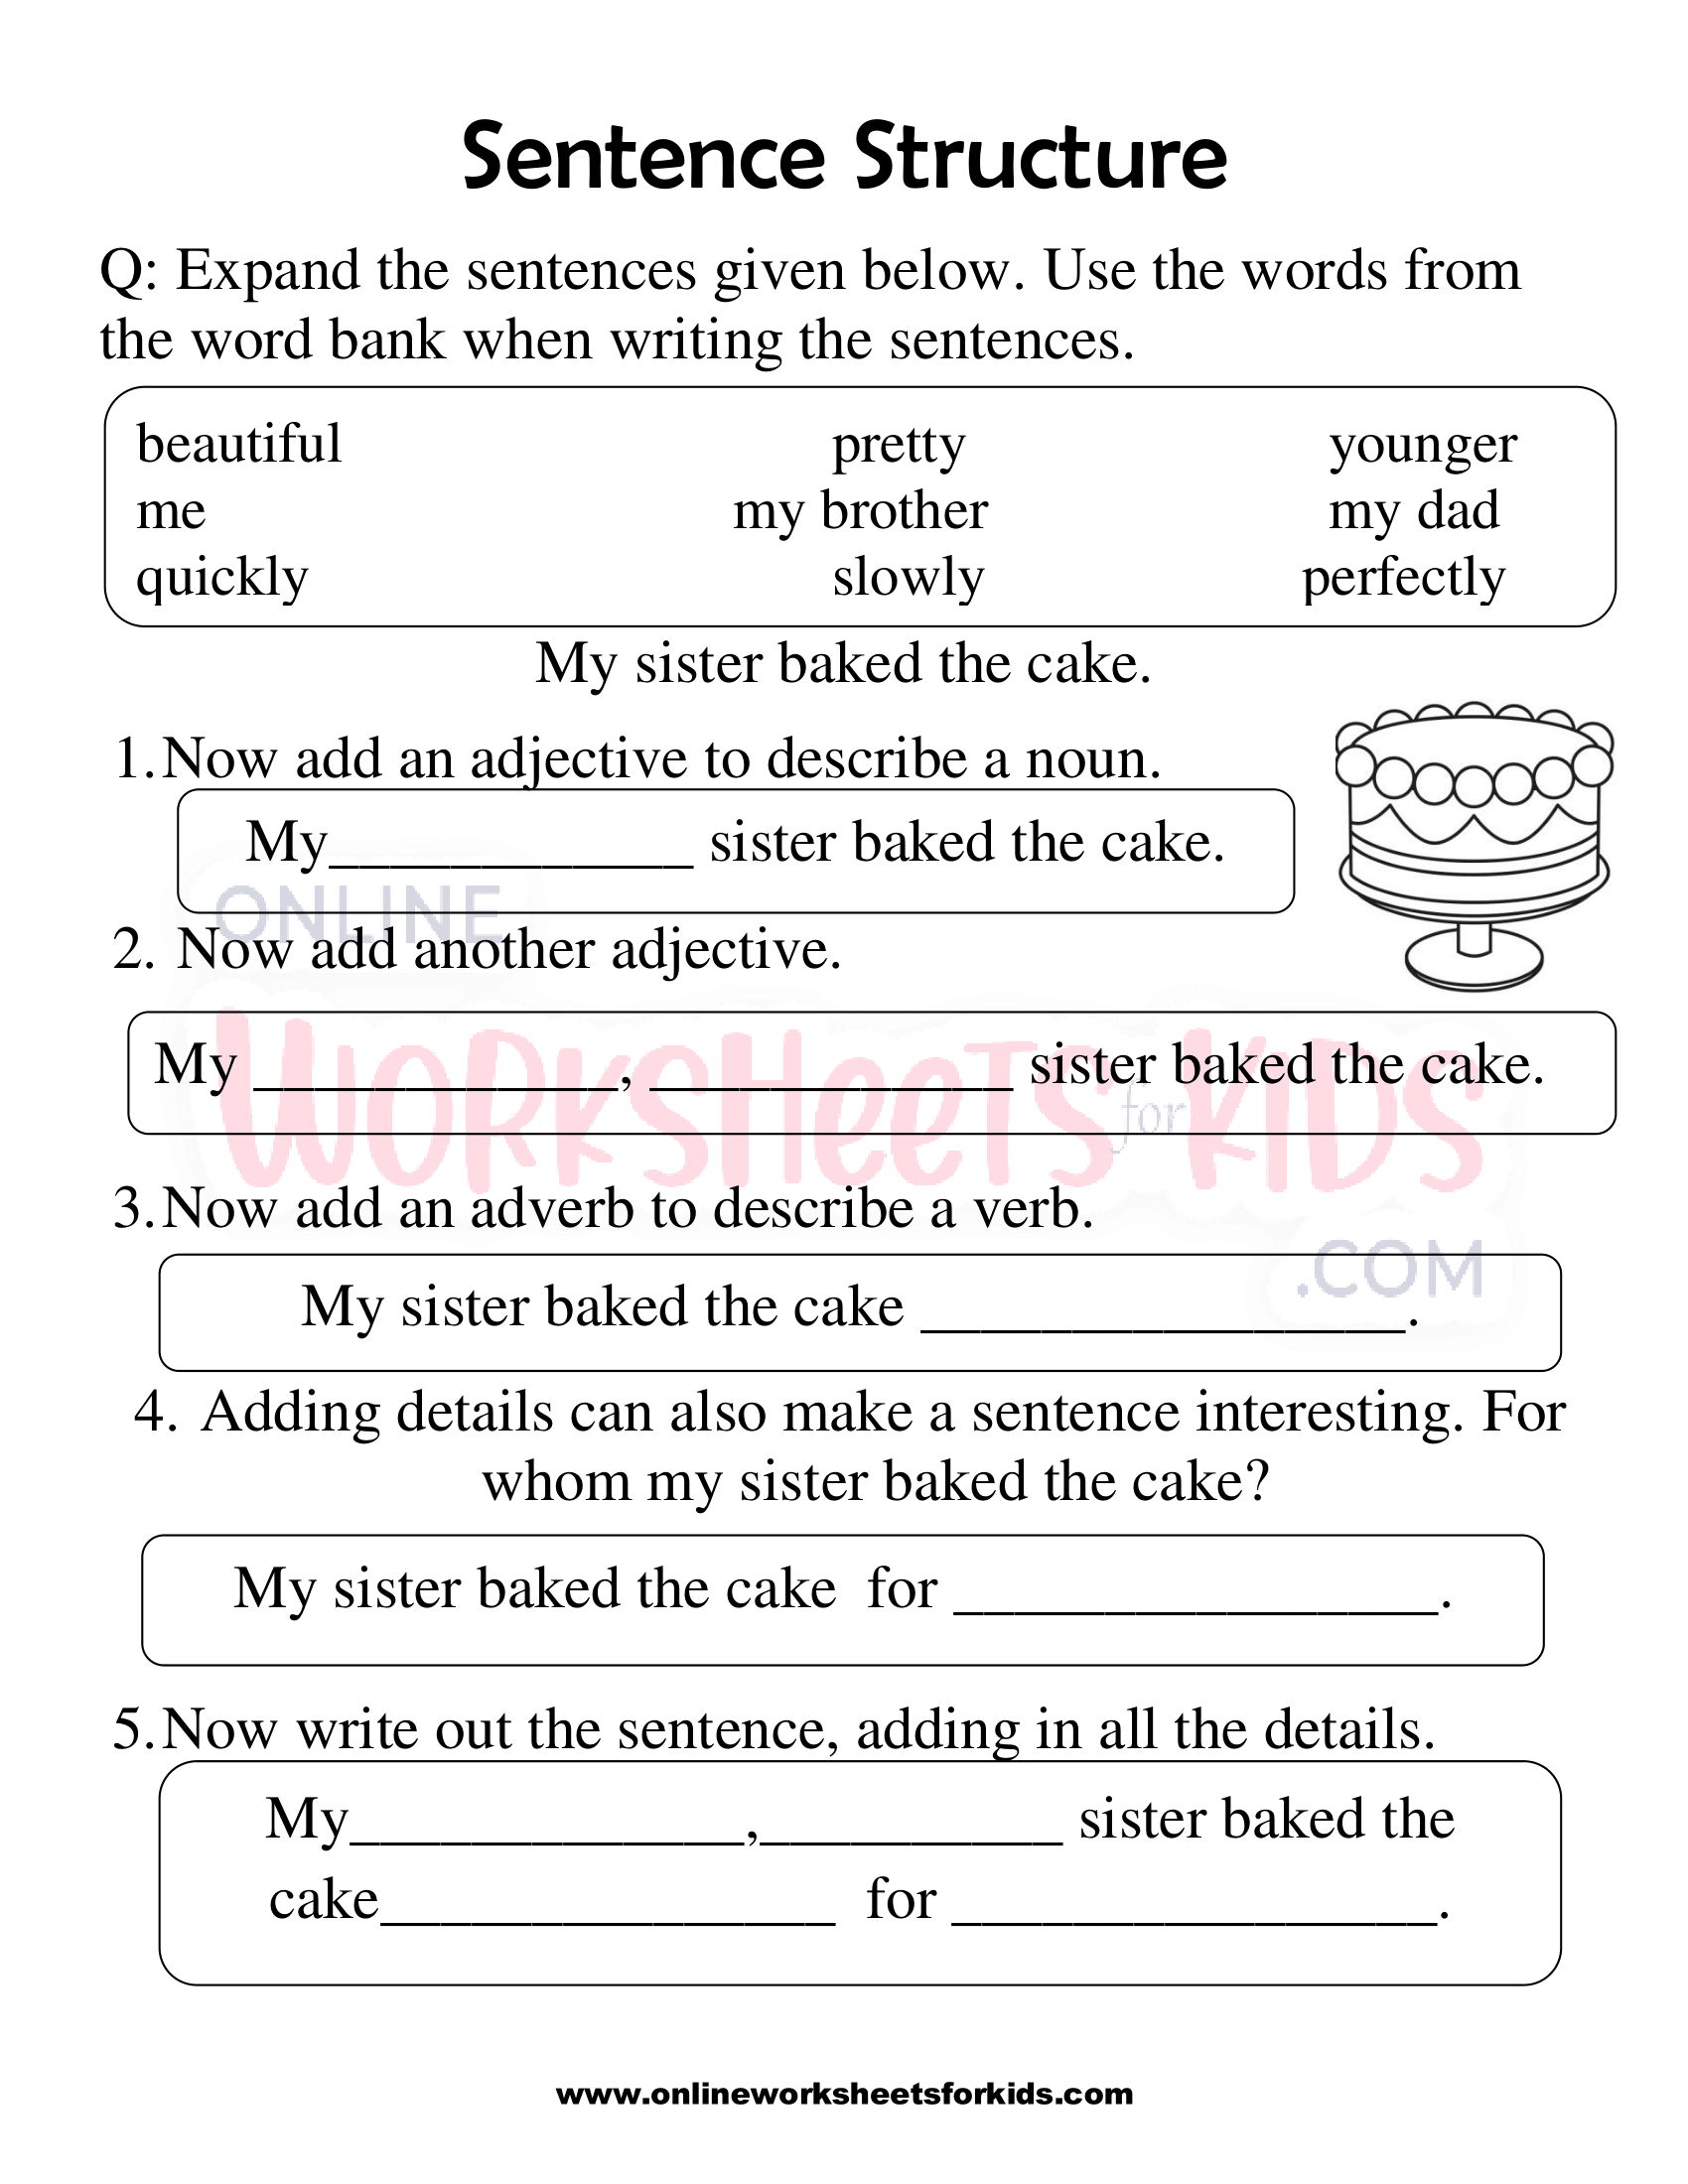 sentence-structure-worksheets-1st-grade-5